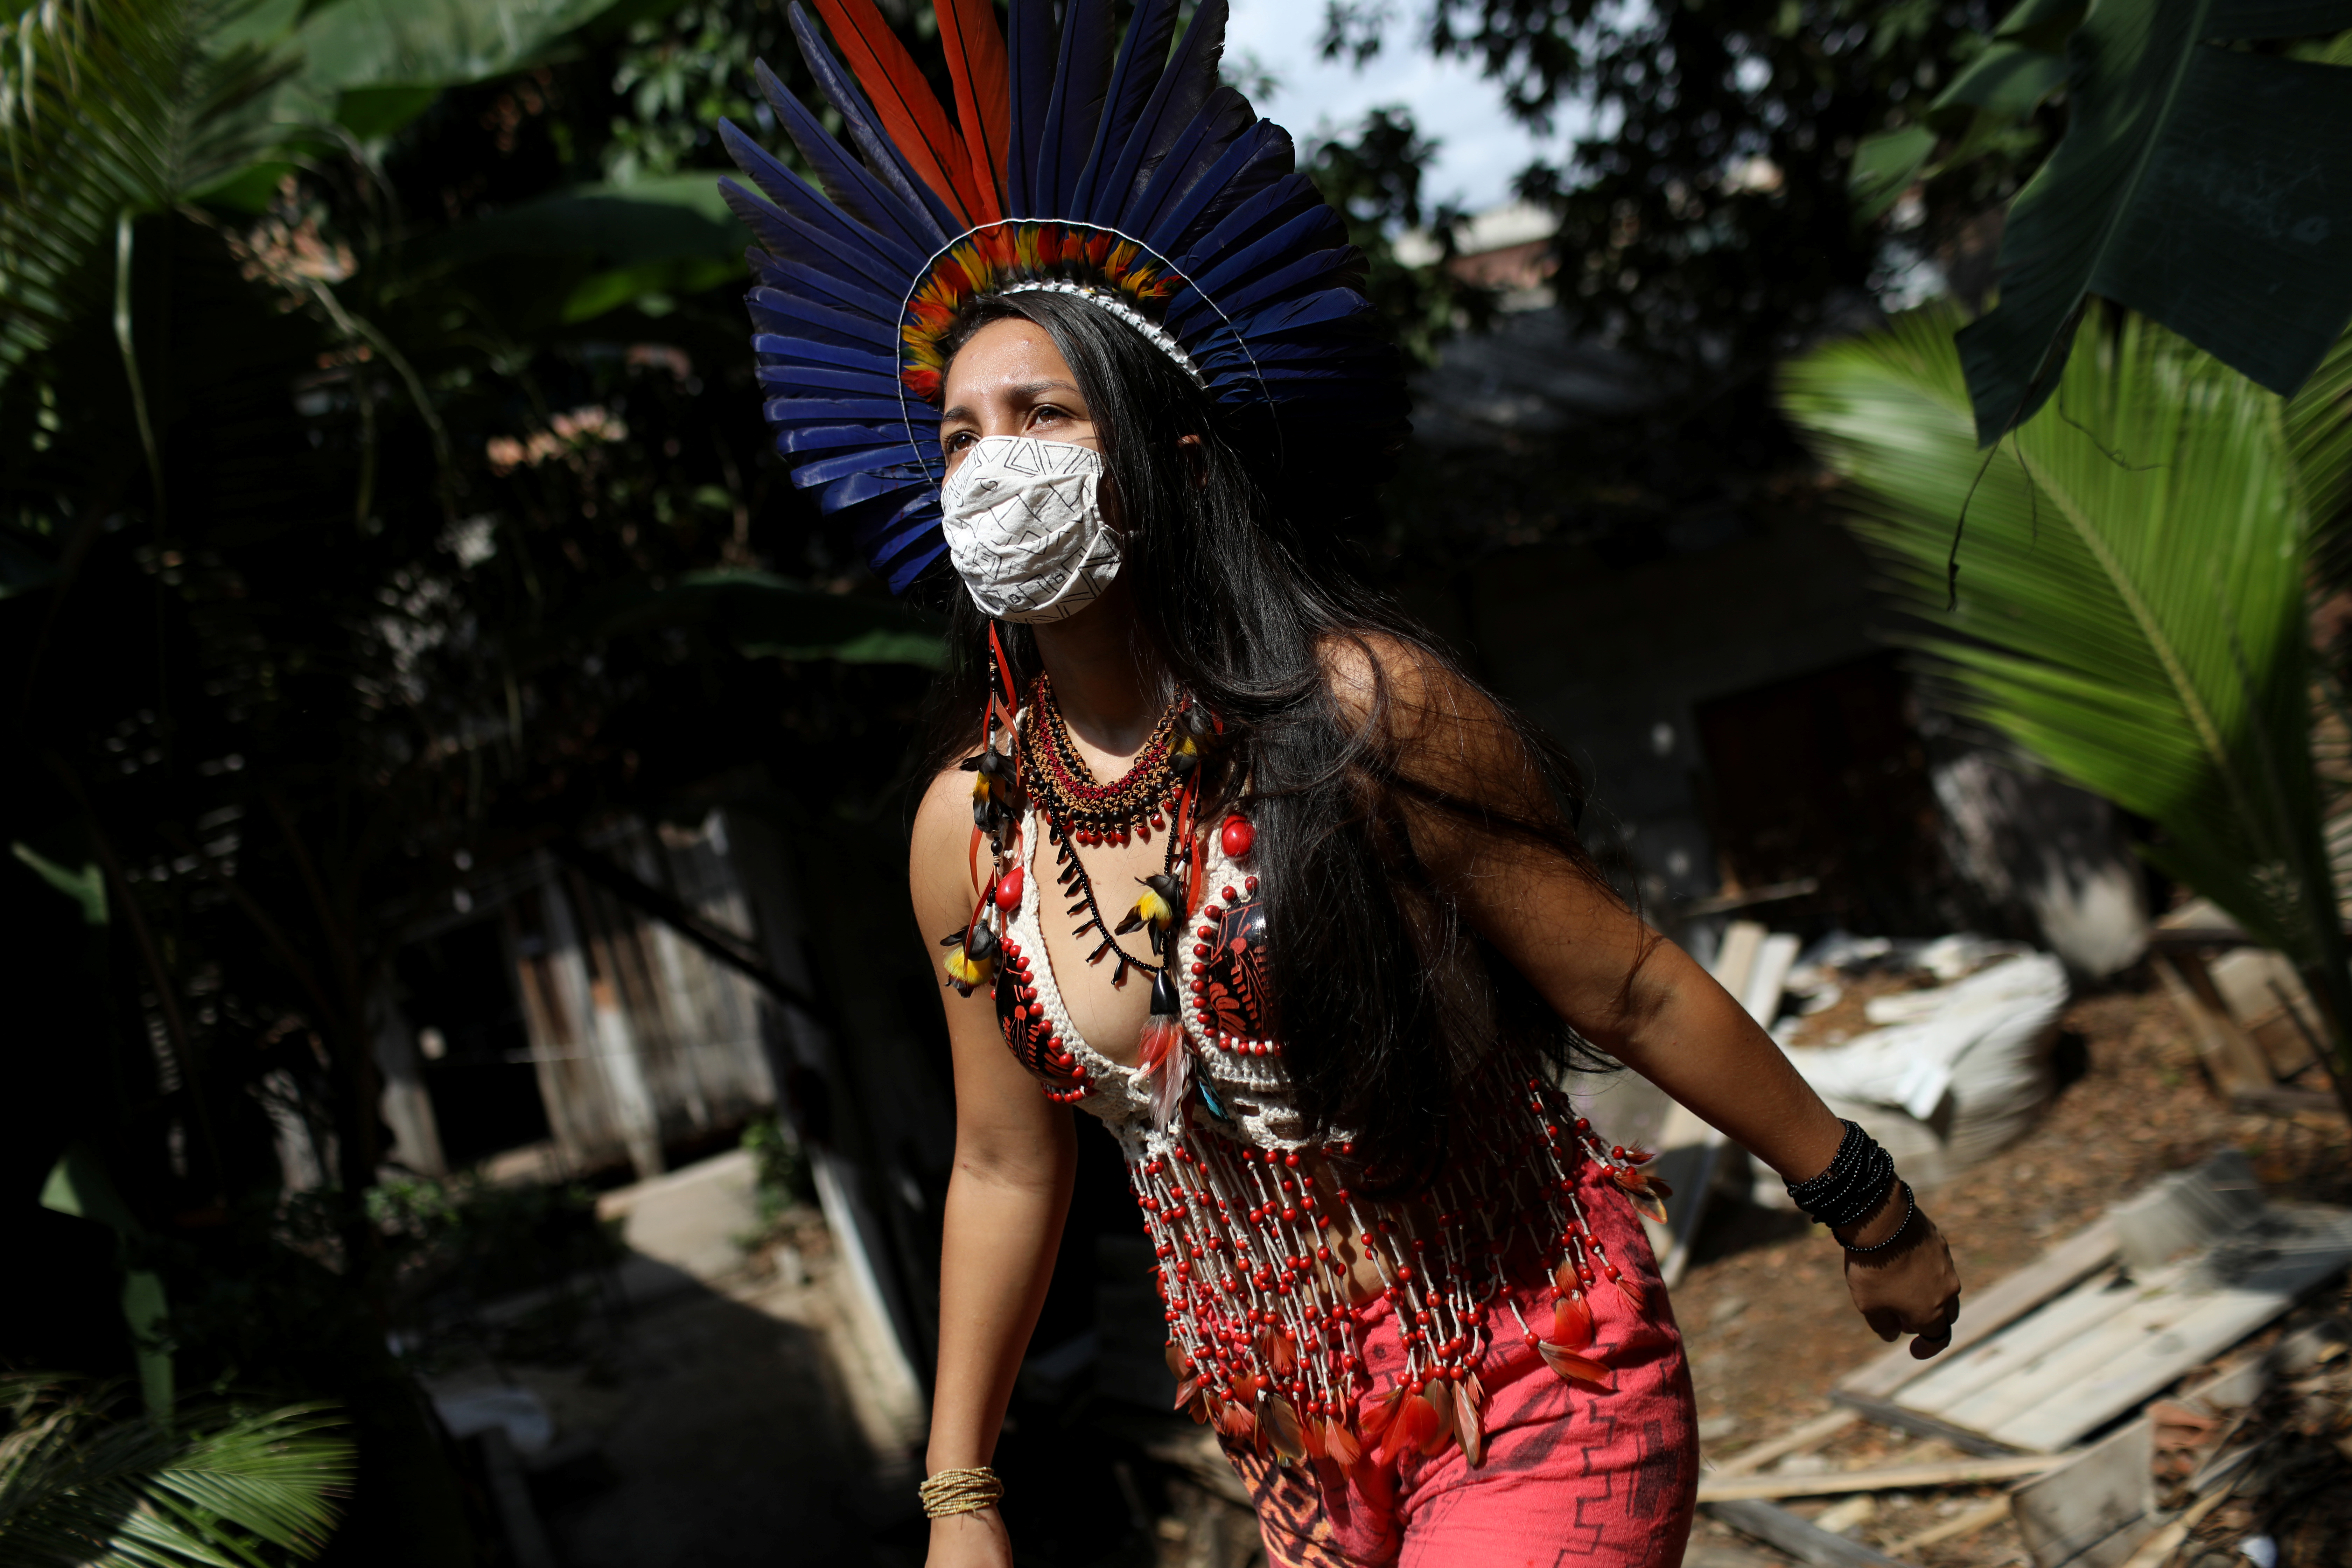 Activista indígena del Amazonas pelea por salvar la selva y el futuro de su tribu (FOTOS)